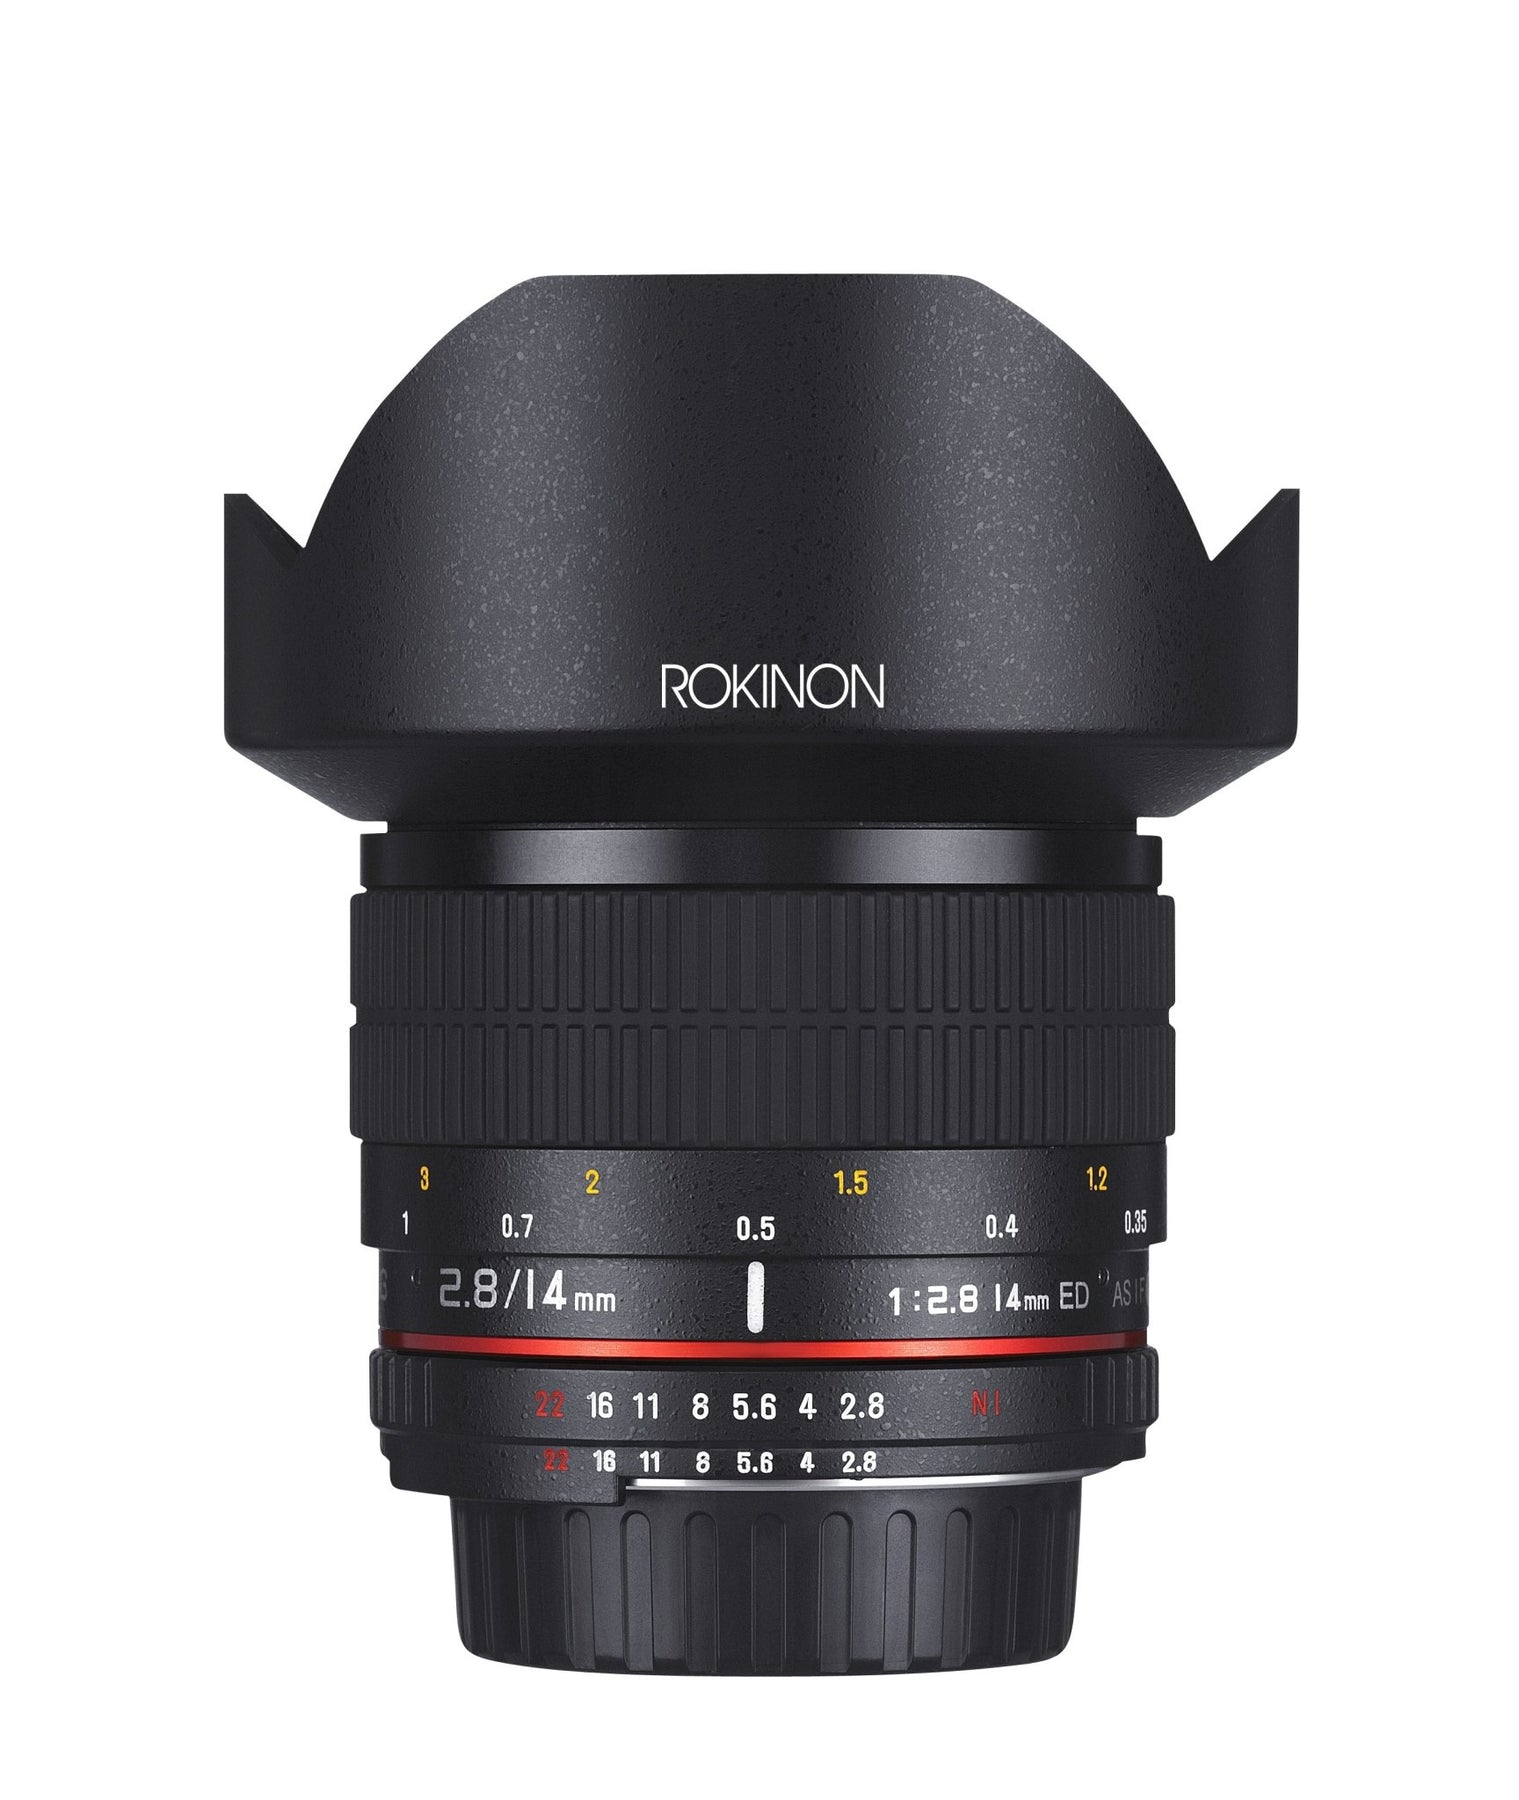 Rokinon 14mm F2.8 Full Frame Ultra Wide Angle Lens for Sony E